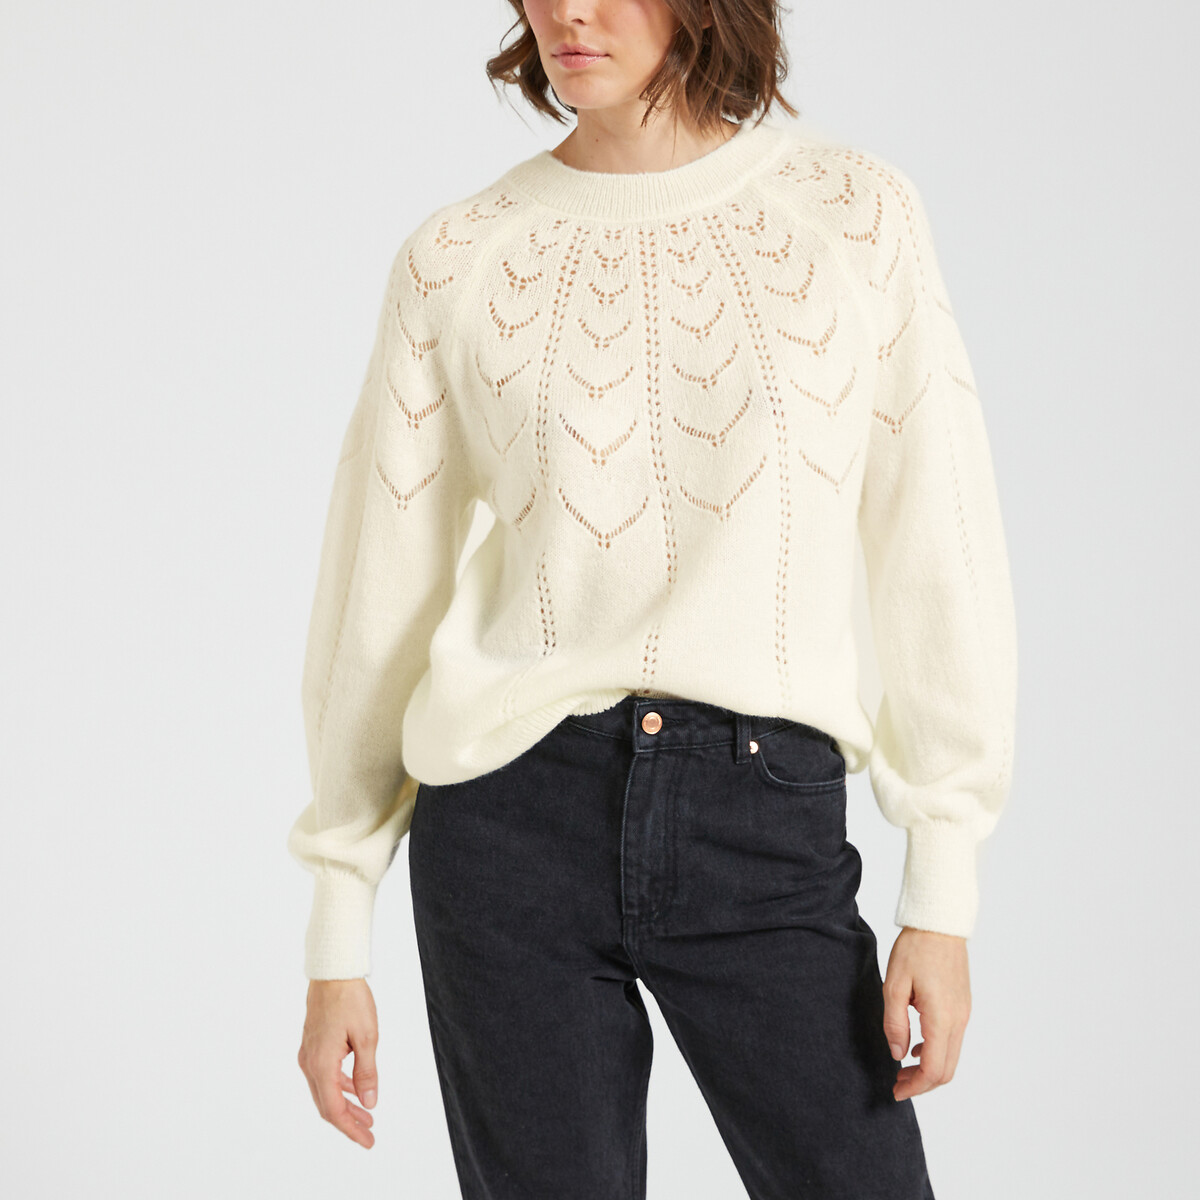 Пуловер короткий из ажурного трикотажа XS белый пуловер с круглым вырезом из ажурного трикотажа xs бежевый